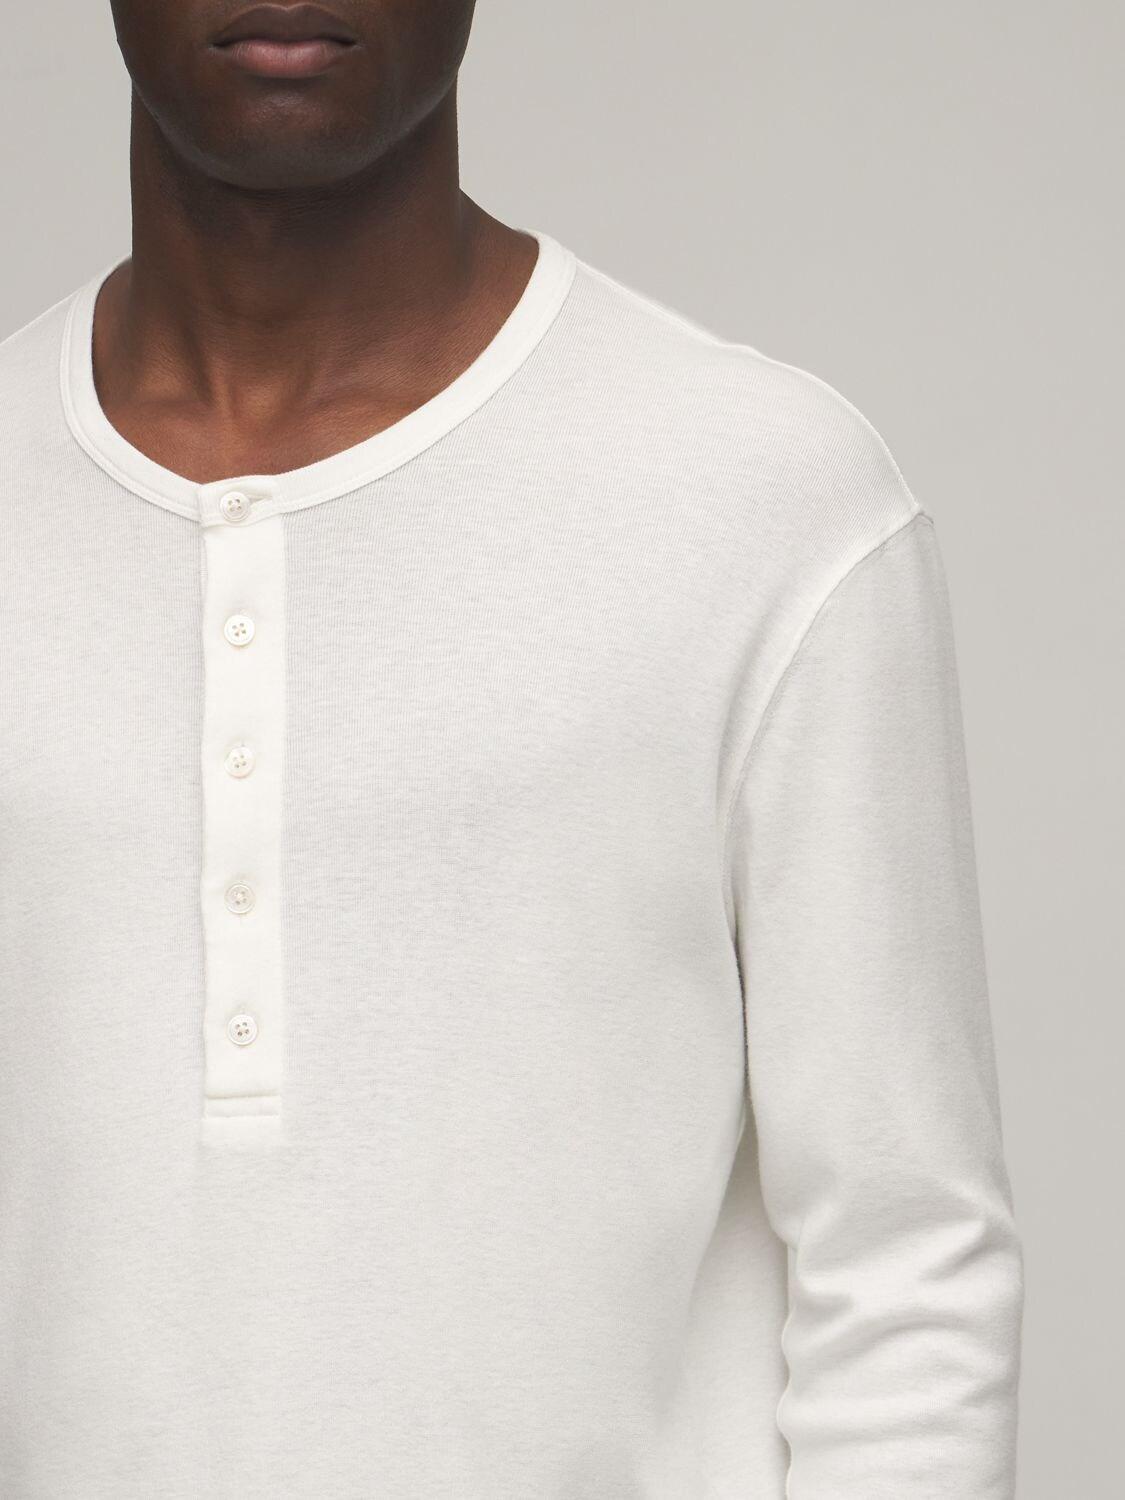 Tom Ford Serafino Cotton & Modal T-shirt in White for Men - Lyst